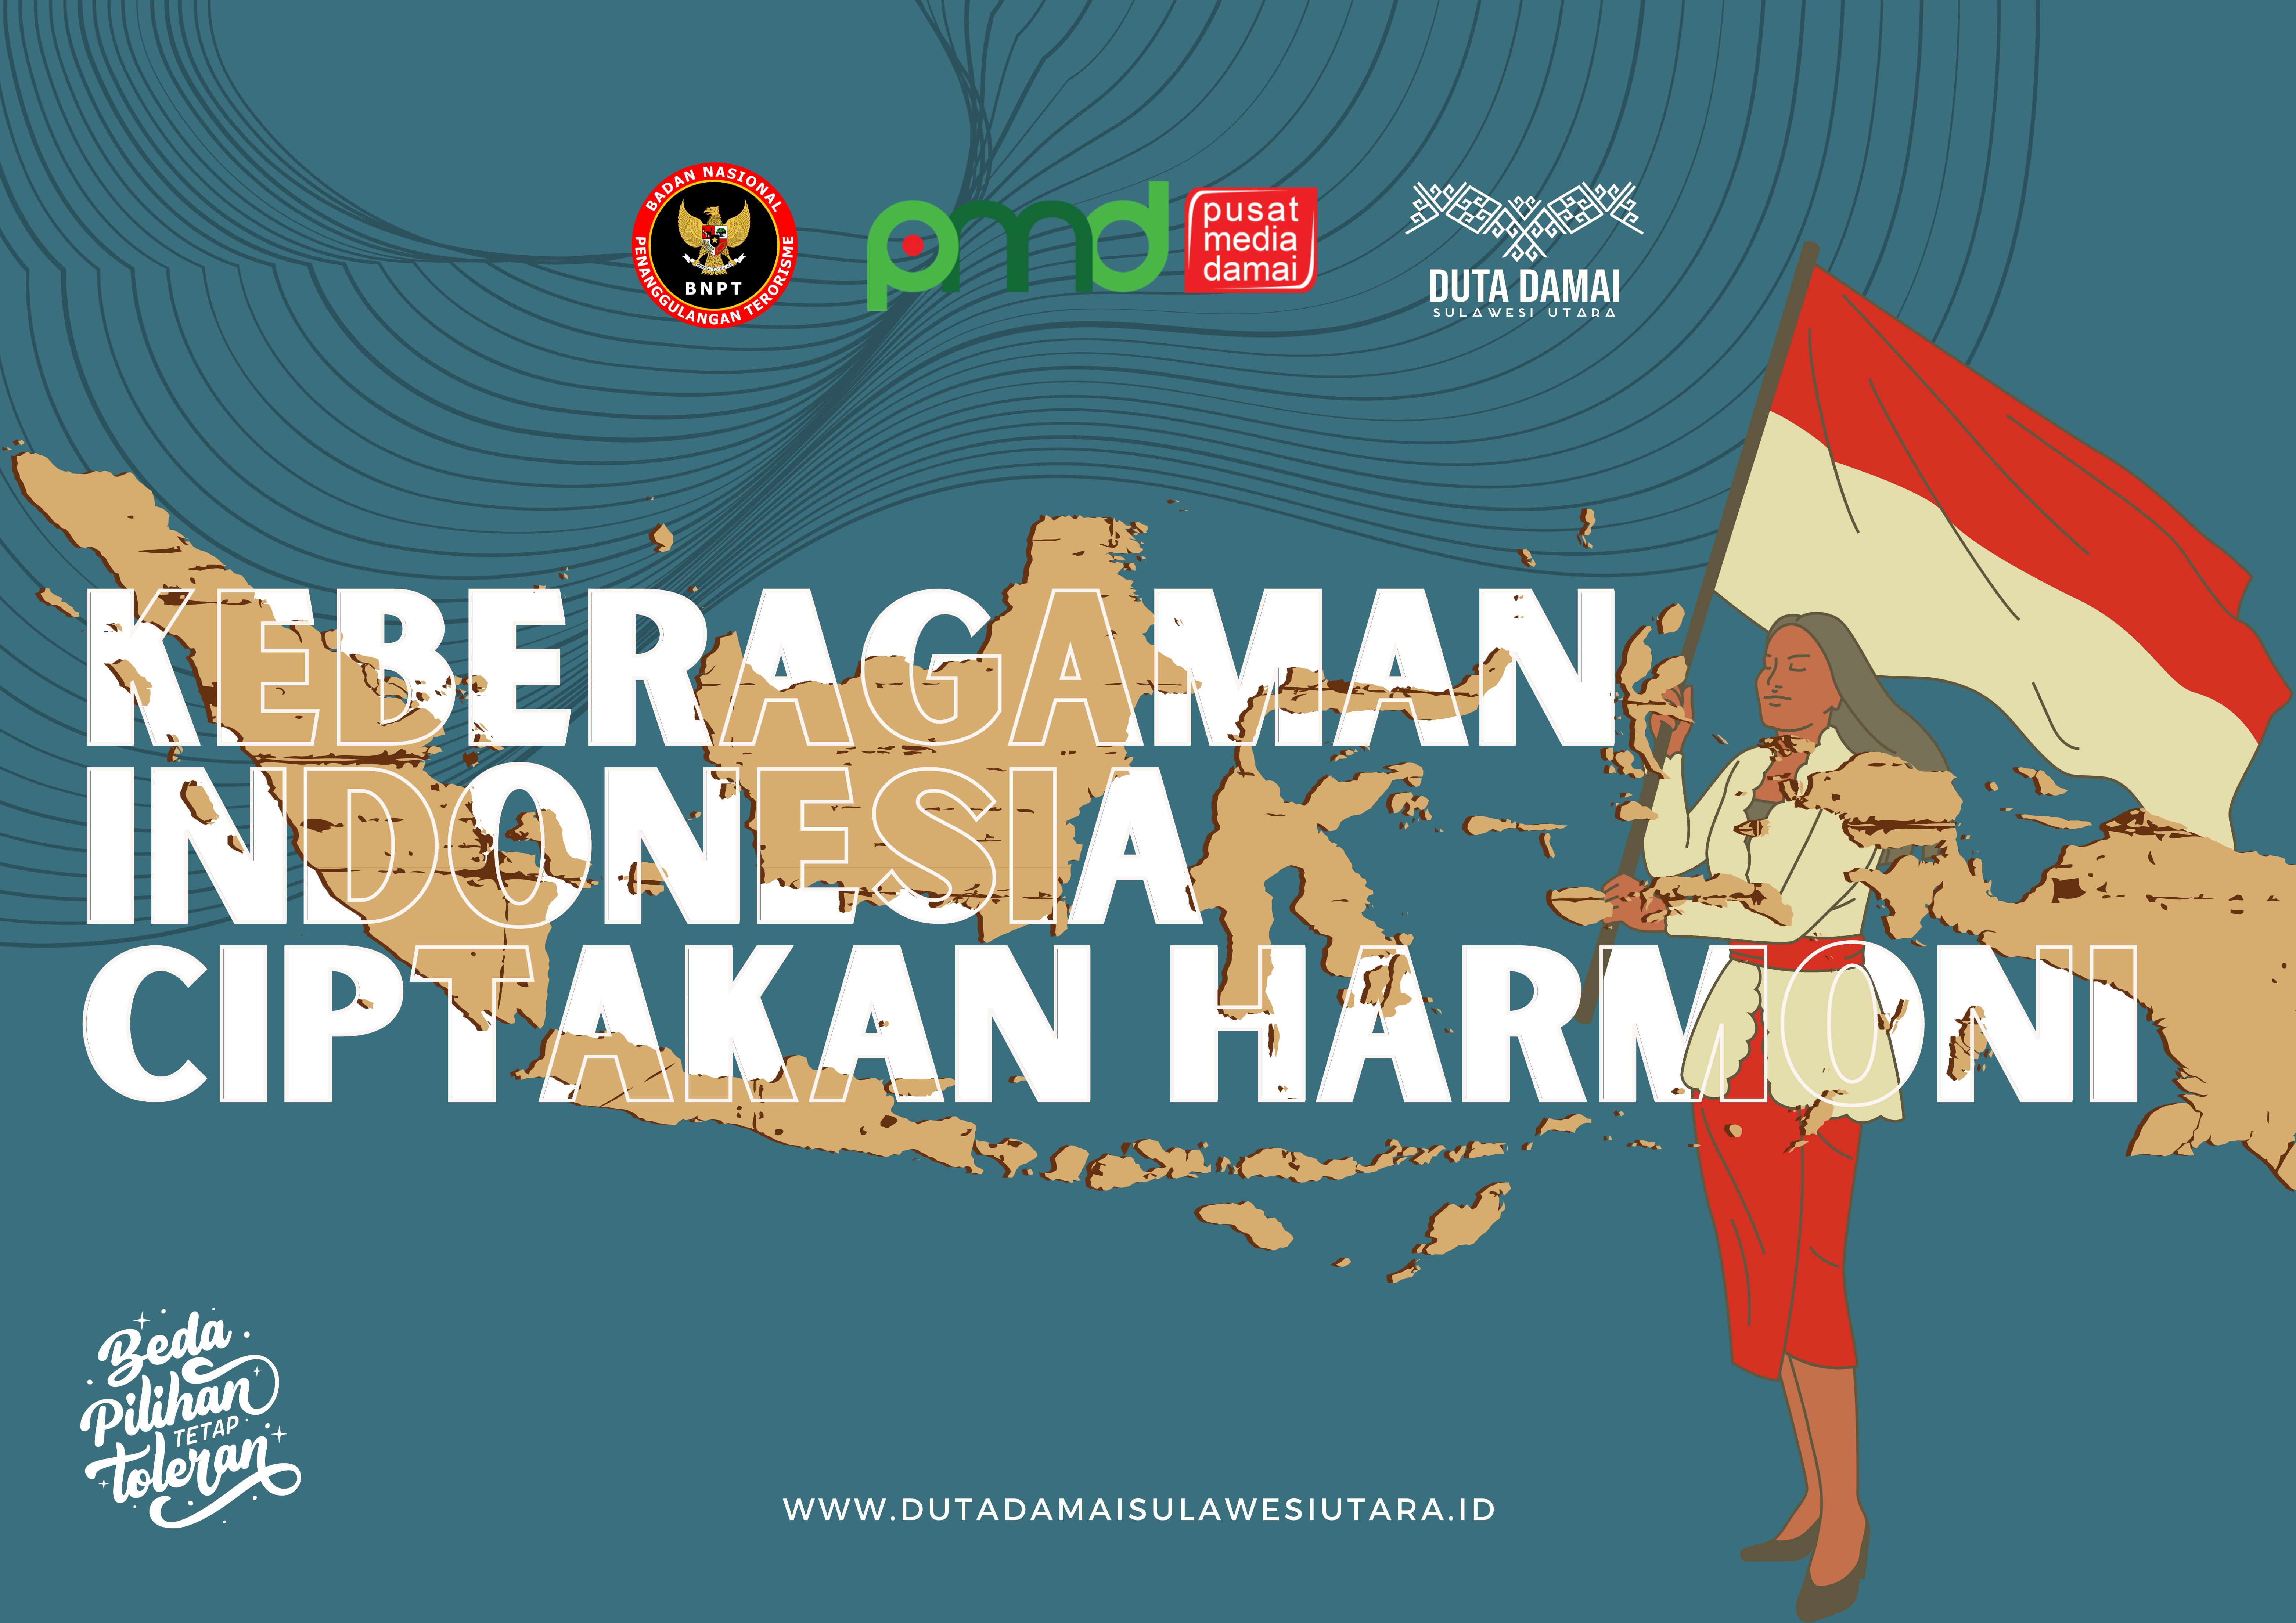 Keberagaman Indonesia Ciptakan Harmoni